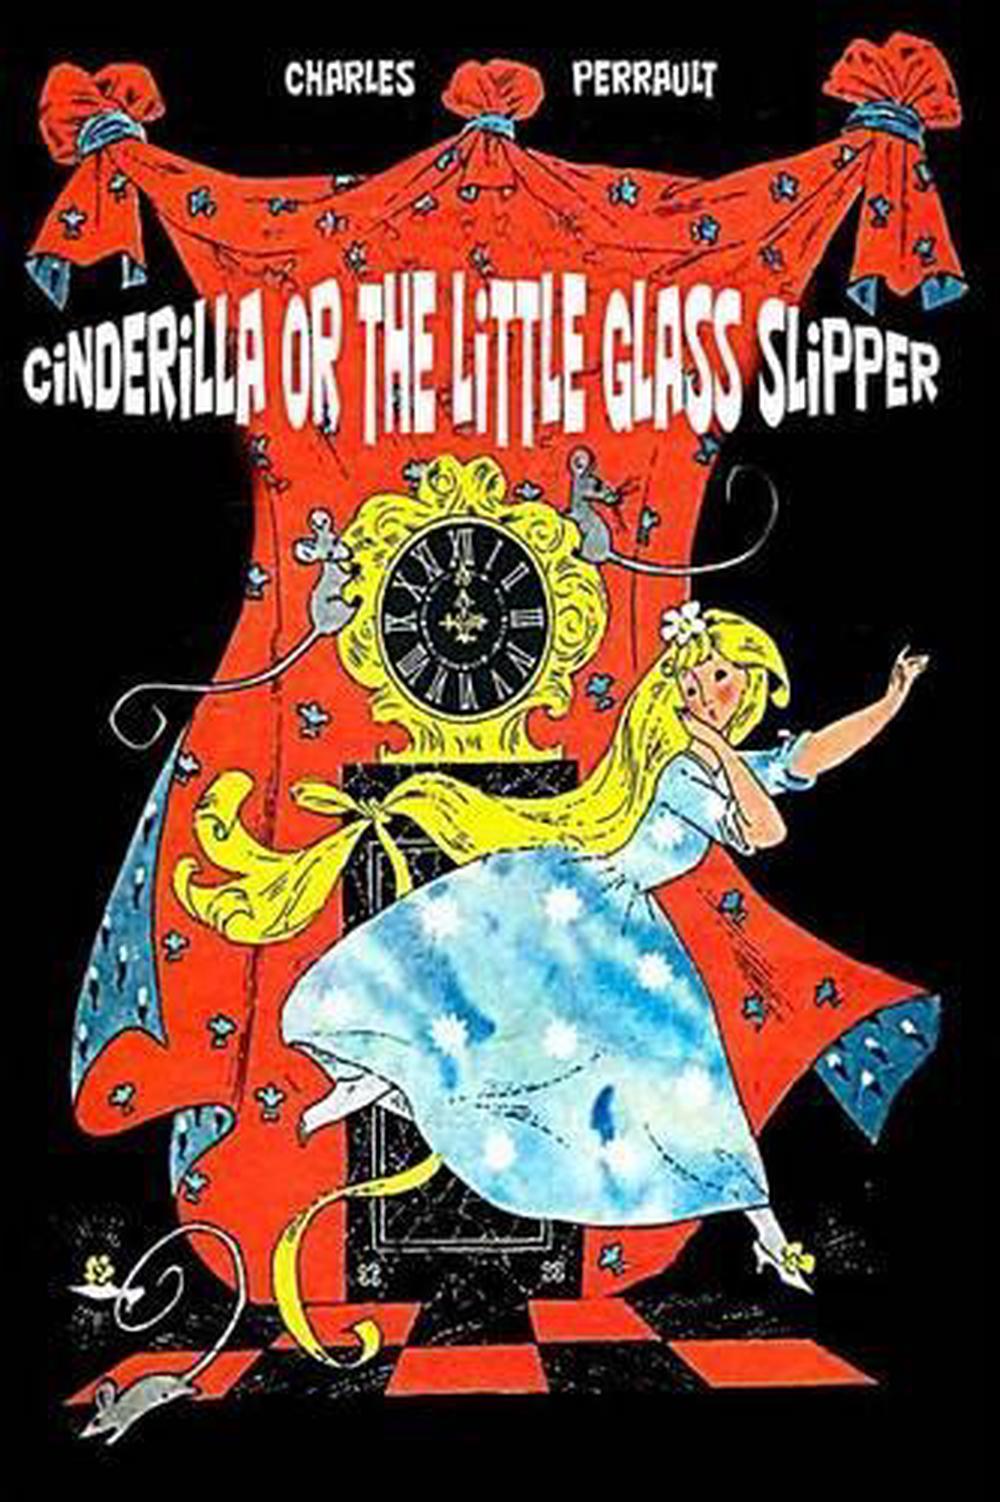 charles perrault the little glass slipper